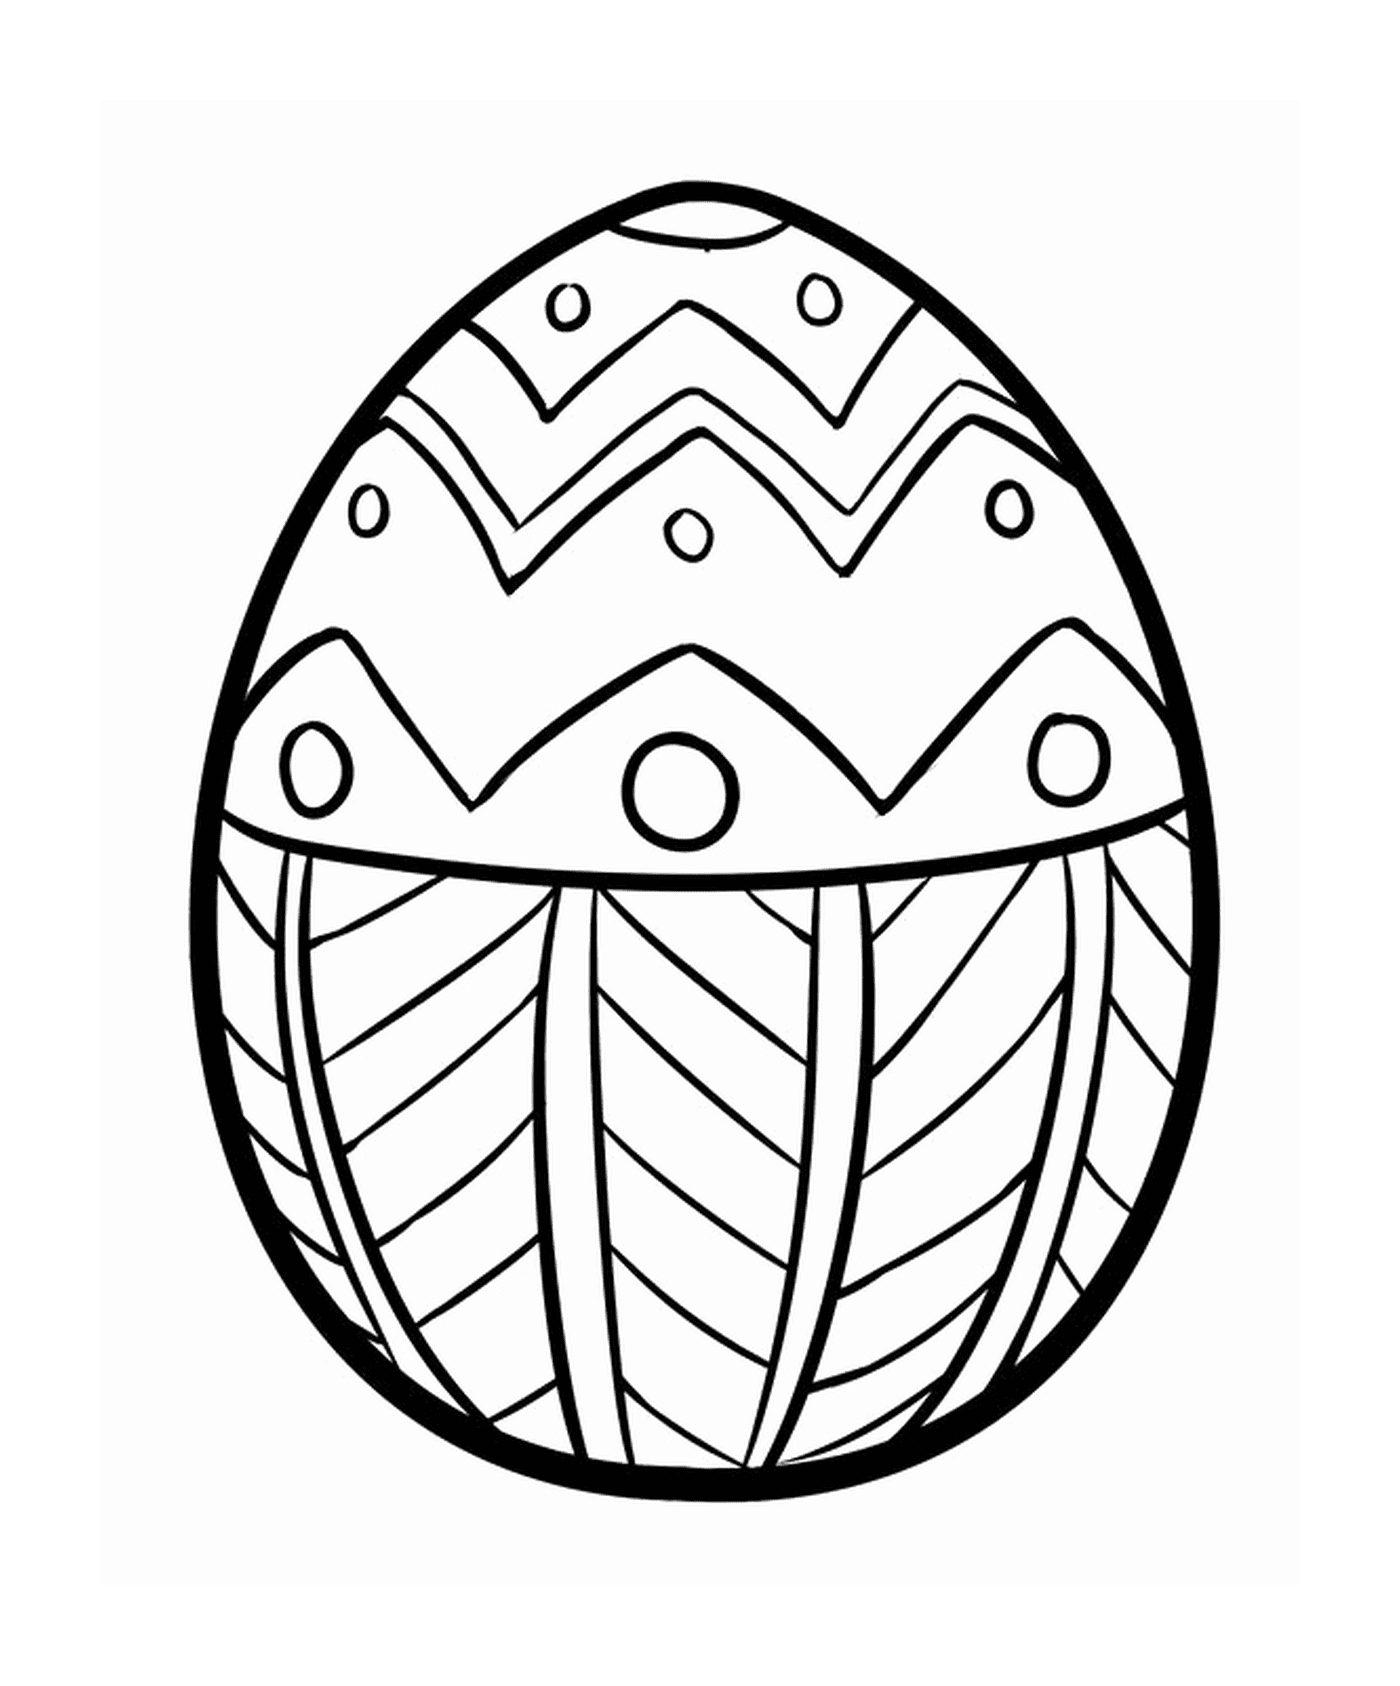   Oeuf de Pâques avec un design intriqué 